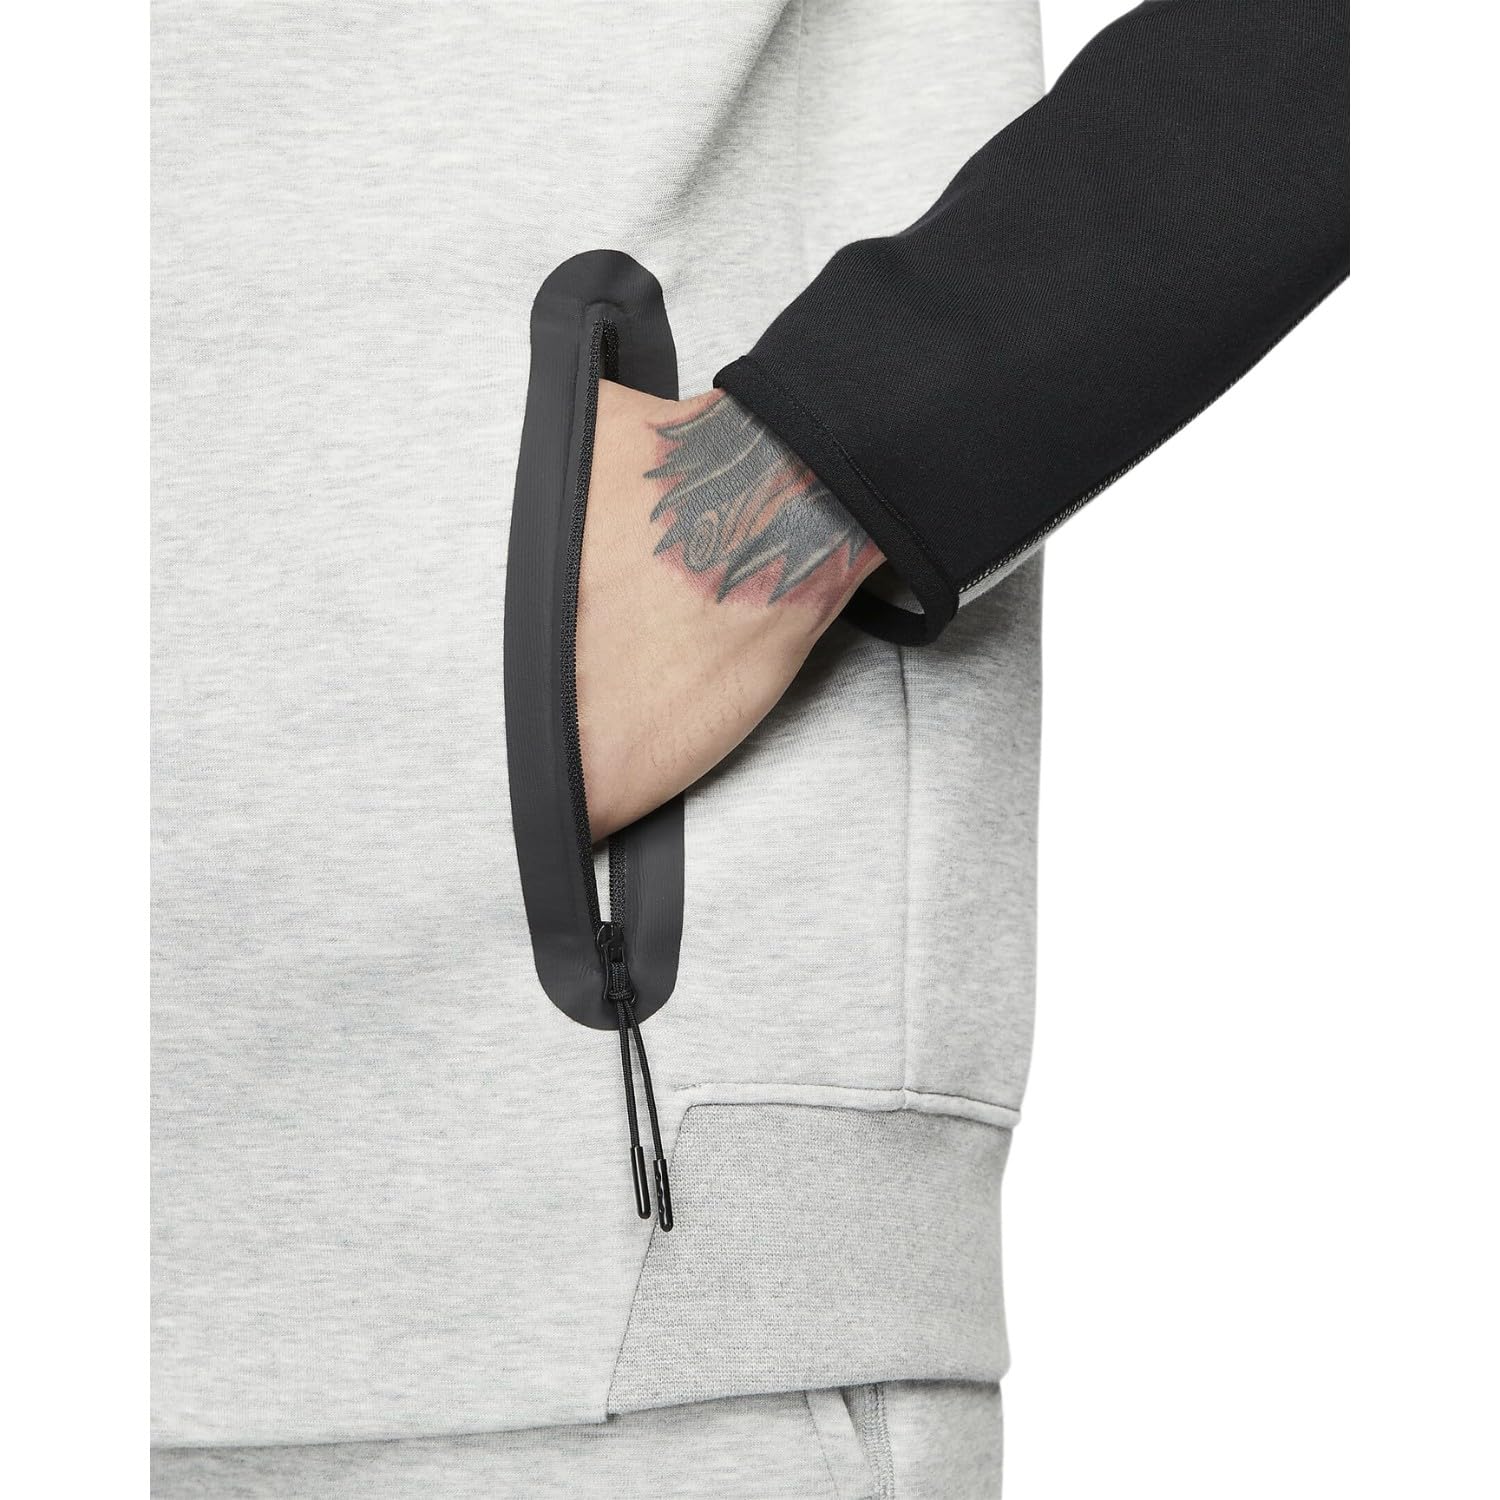 Nike Sportswear Tech Fleece Windrunner Men's Full-Zip Hoodie Size - Small Heather/Black